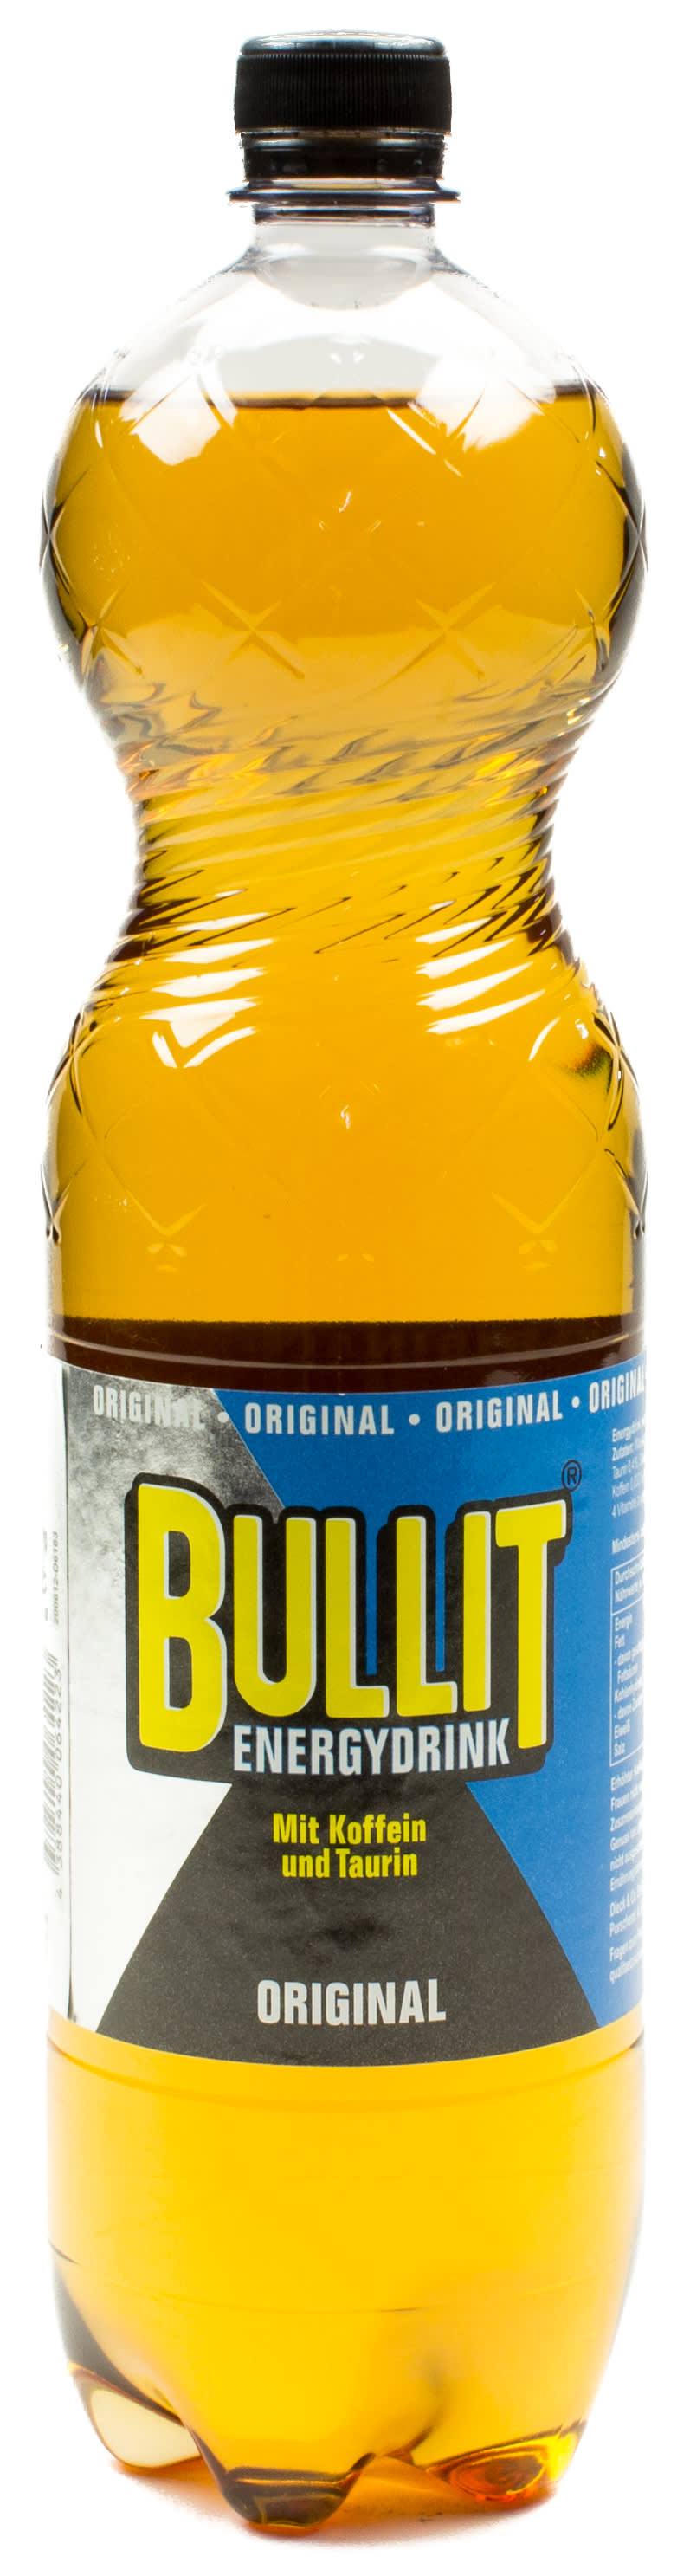 Bullit Original Energydrink 1,5 l PET Einweg